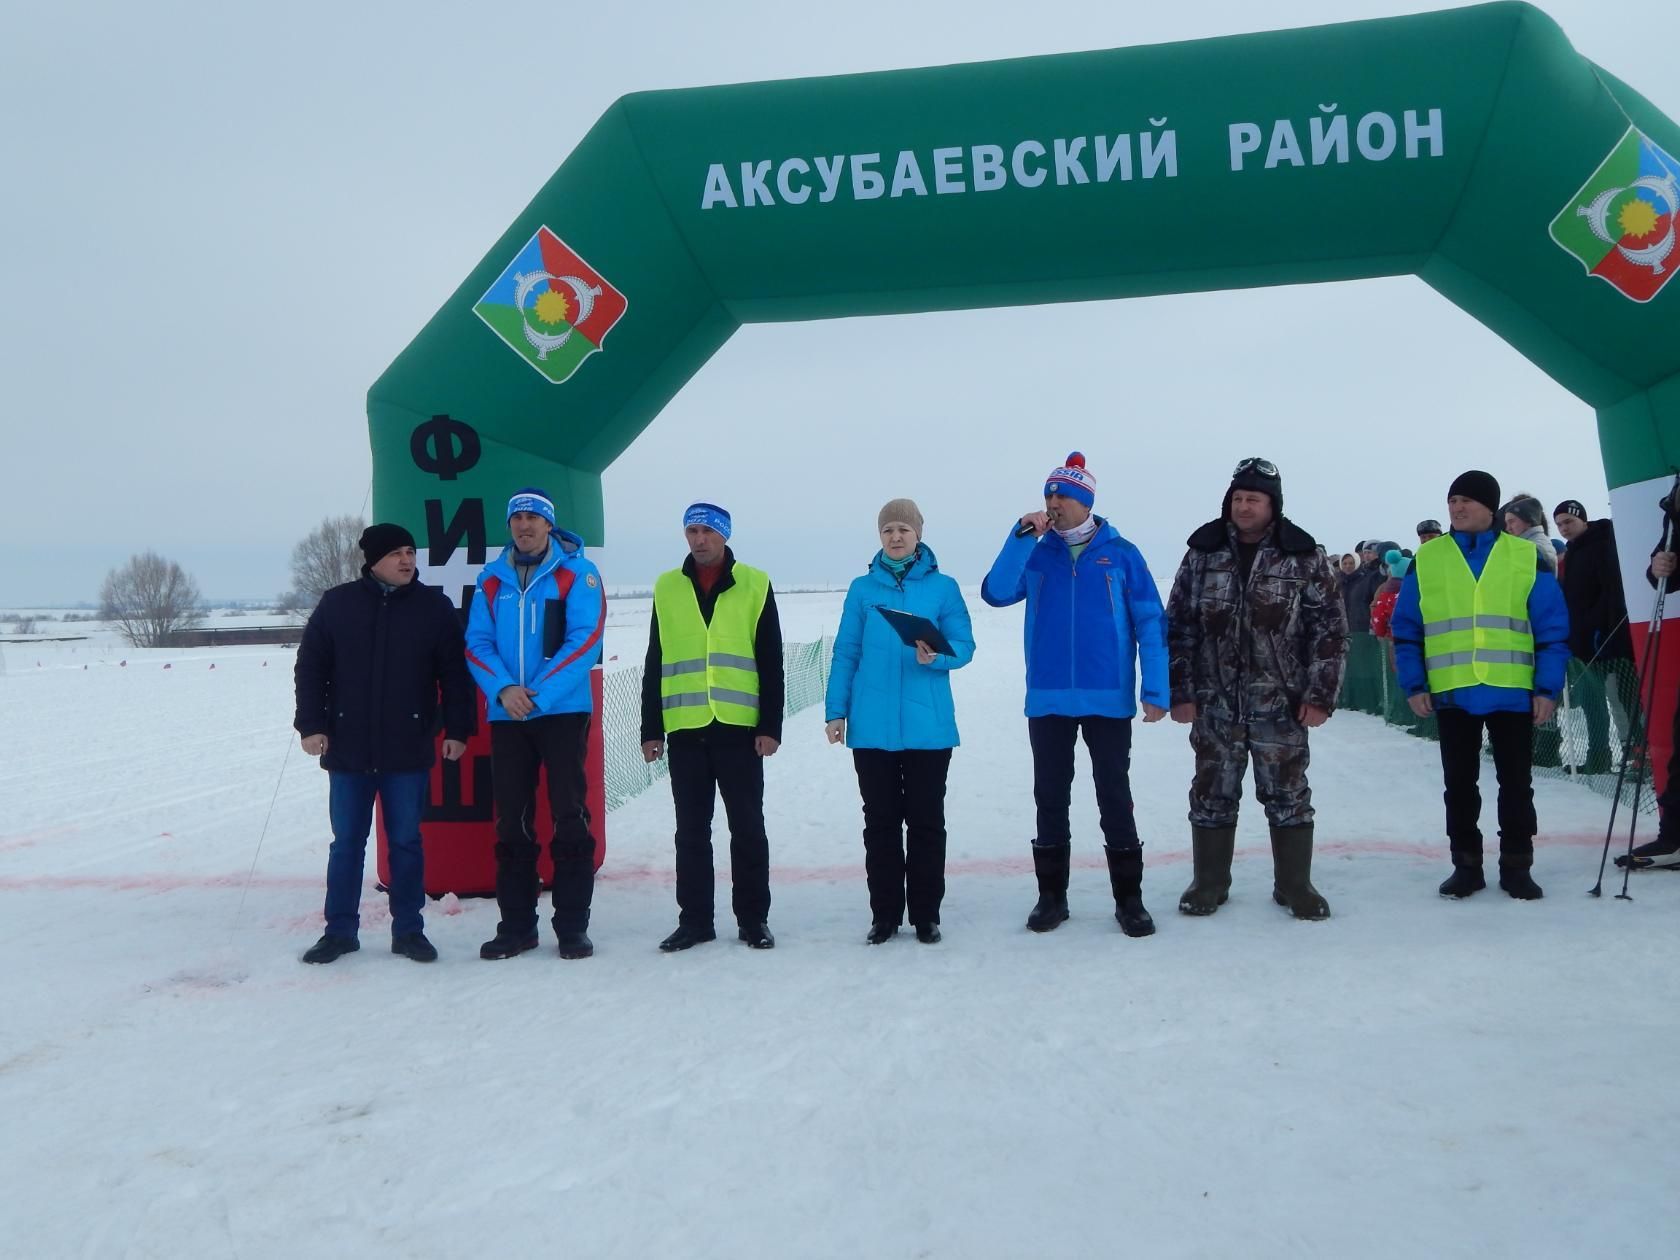 «Лыжня Беловки» завершила лыжный сезон в Аксубаевском районе